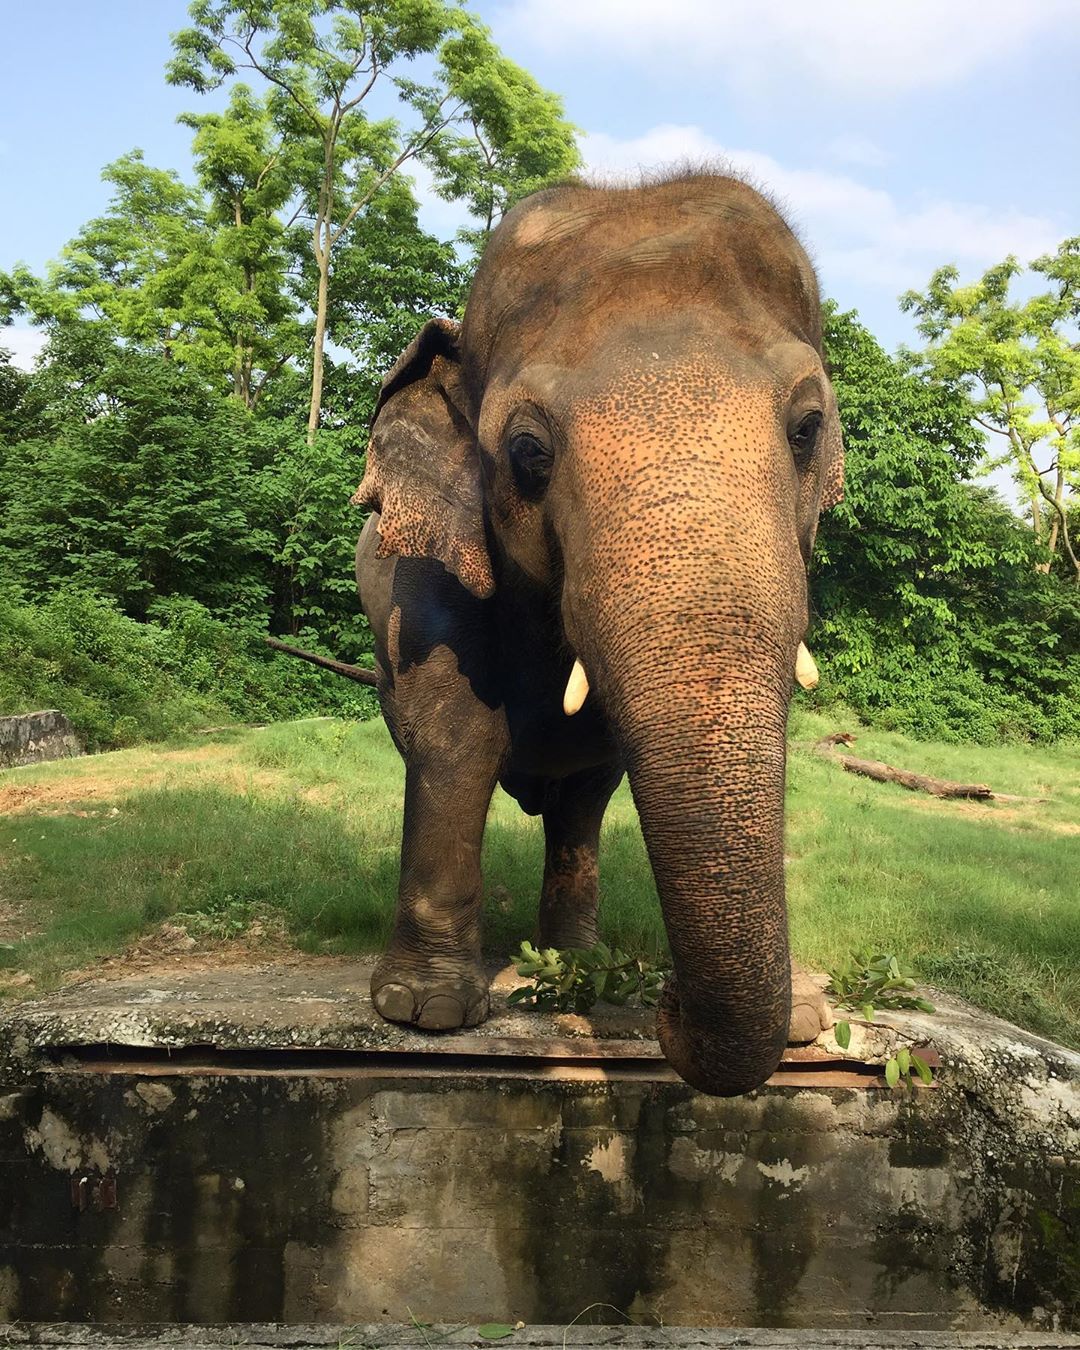 Kaavan, el elefante más solitario del mundo, por fin tendrá una nueva vida